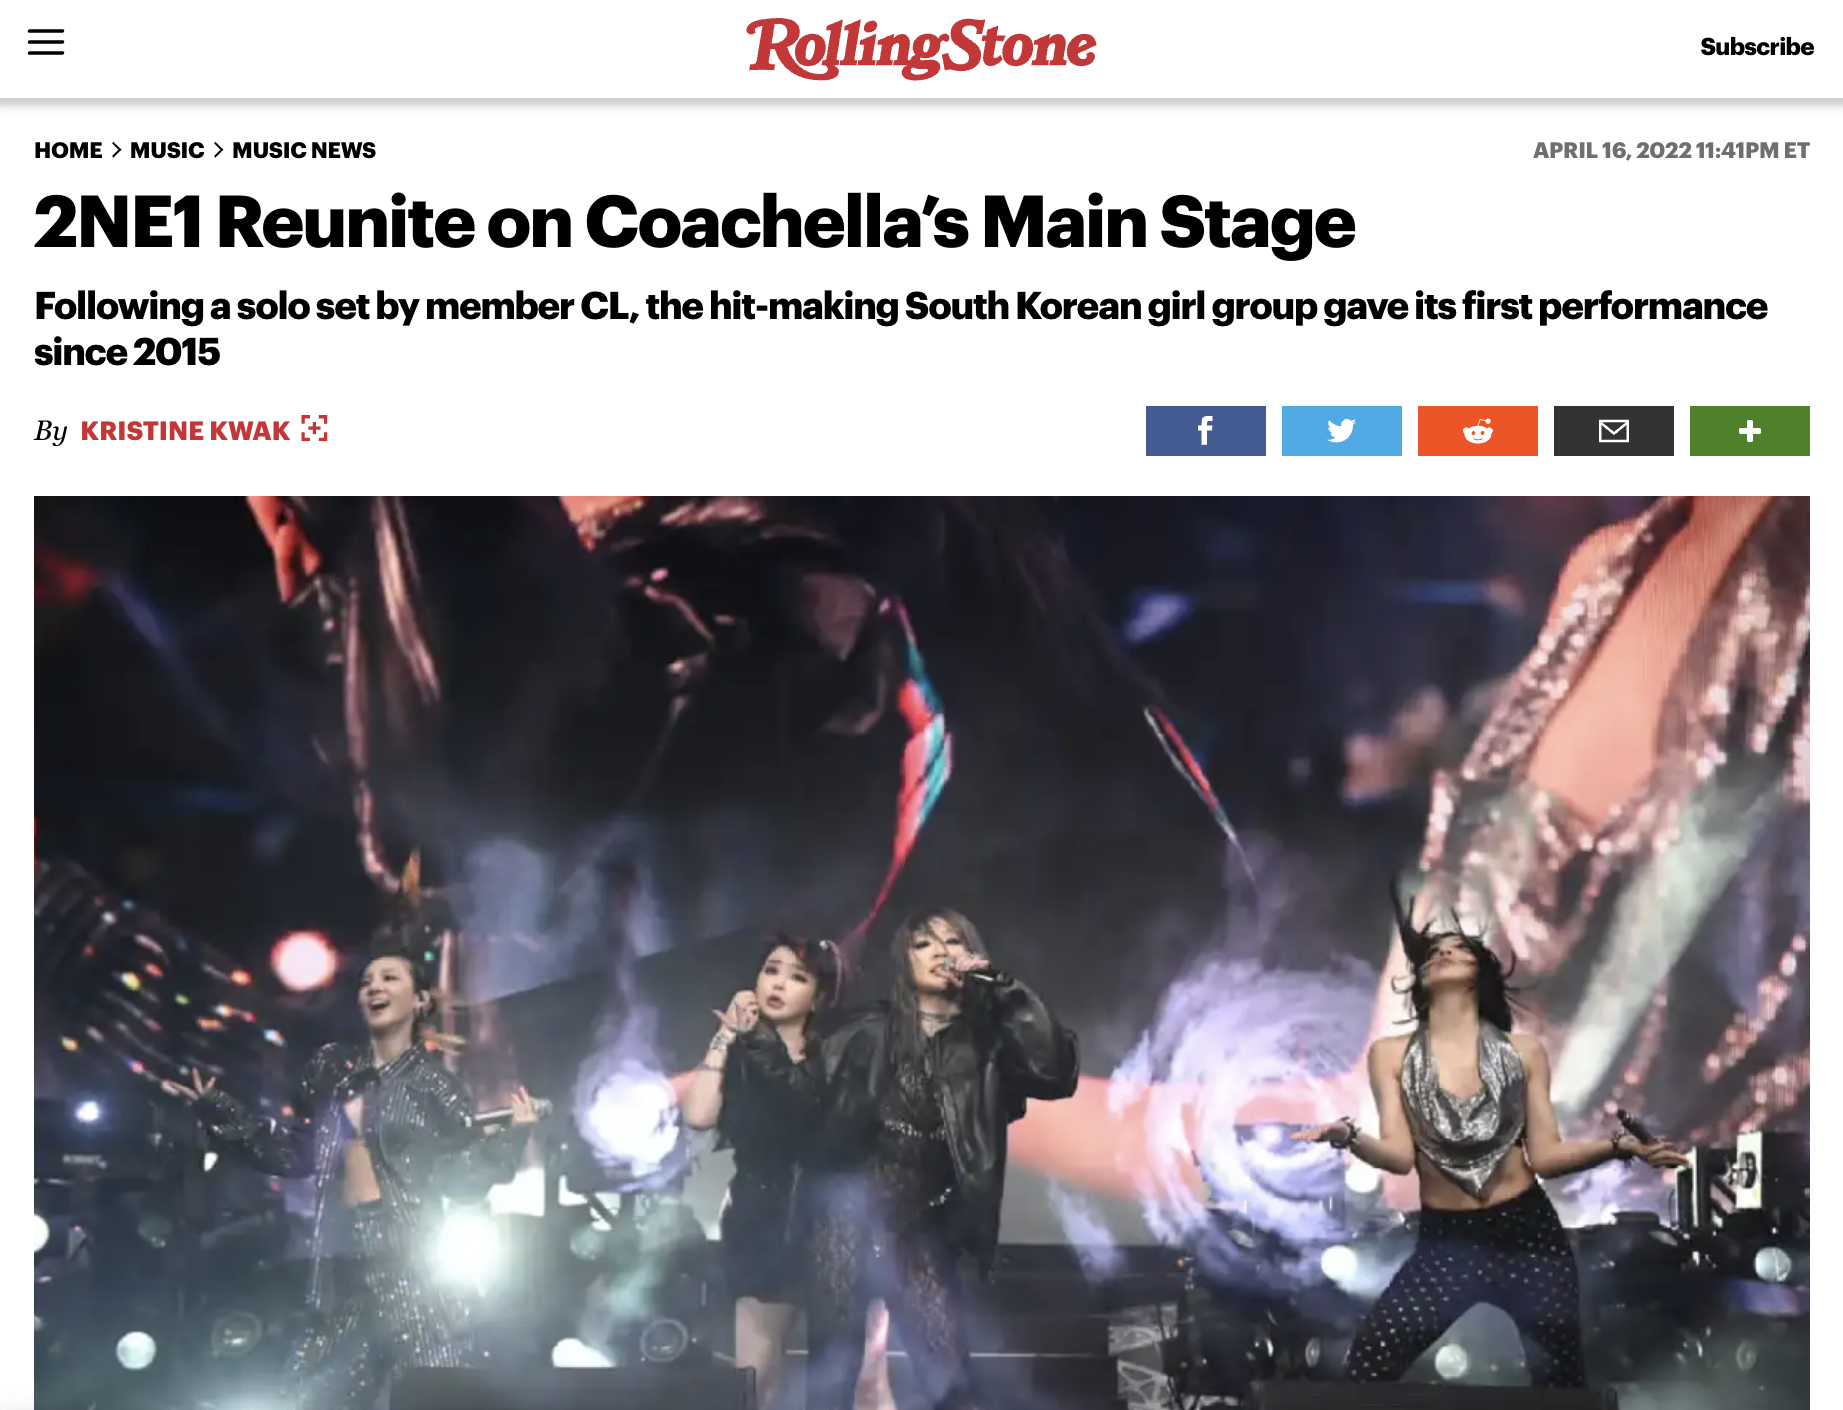 Kontroversi! aespa Girl Grup Pertama yang Tampil di 'Main Stage' Coachella? Fans Sebut Ada BLACKPINK dan 2NE1